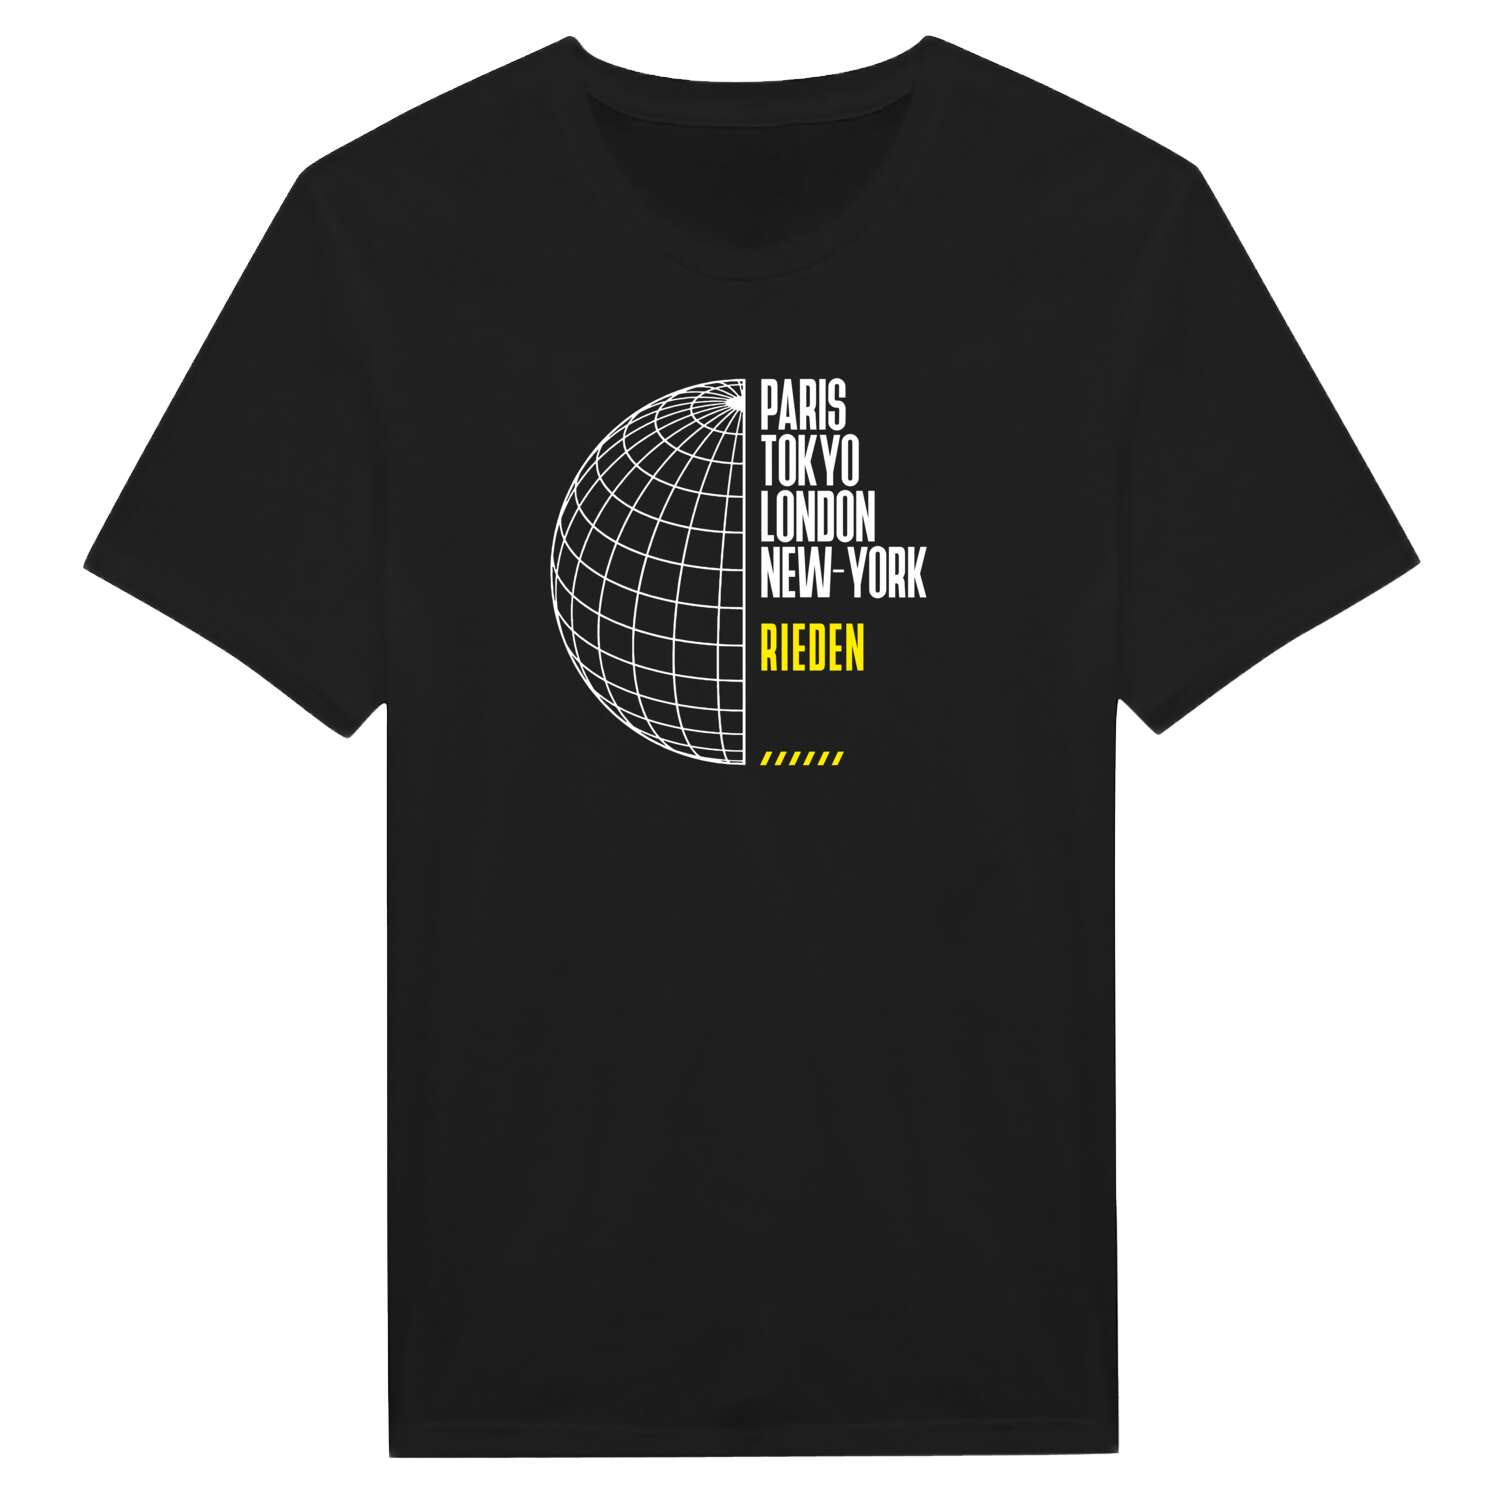 Rieden T-Shirt »Paris Tokyo London«